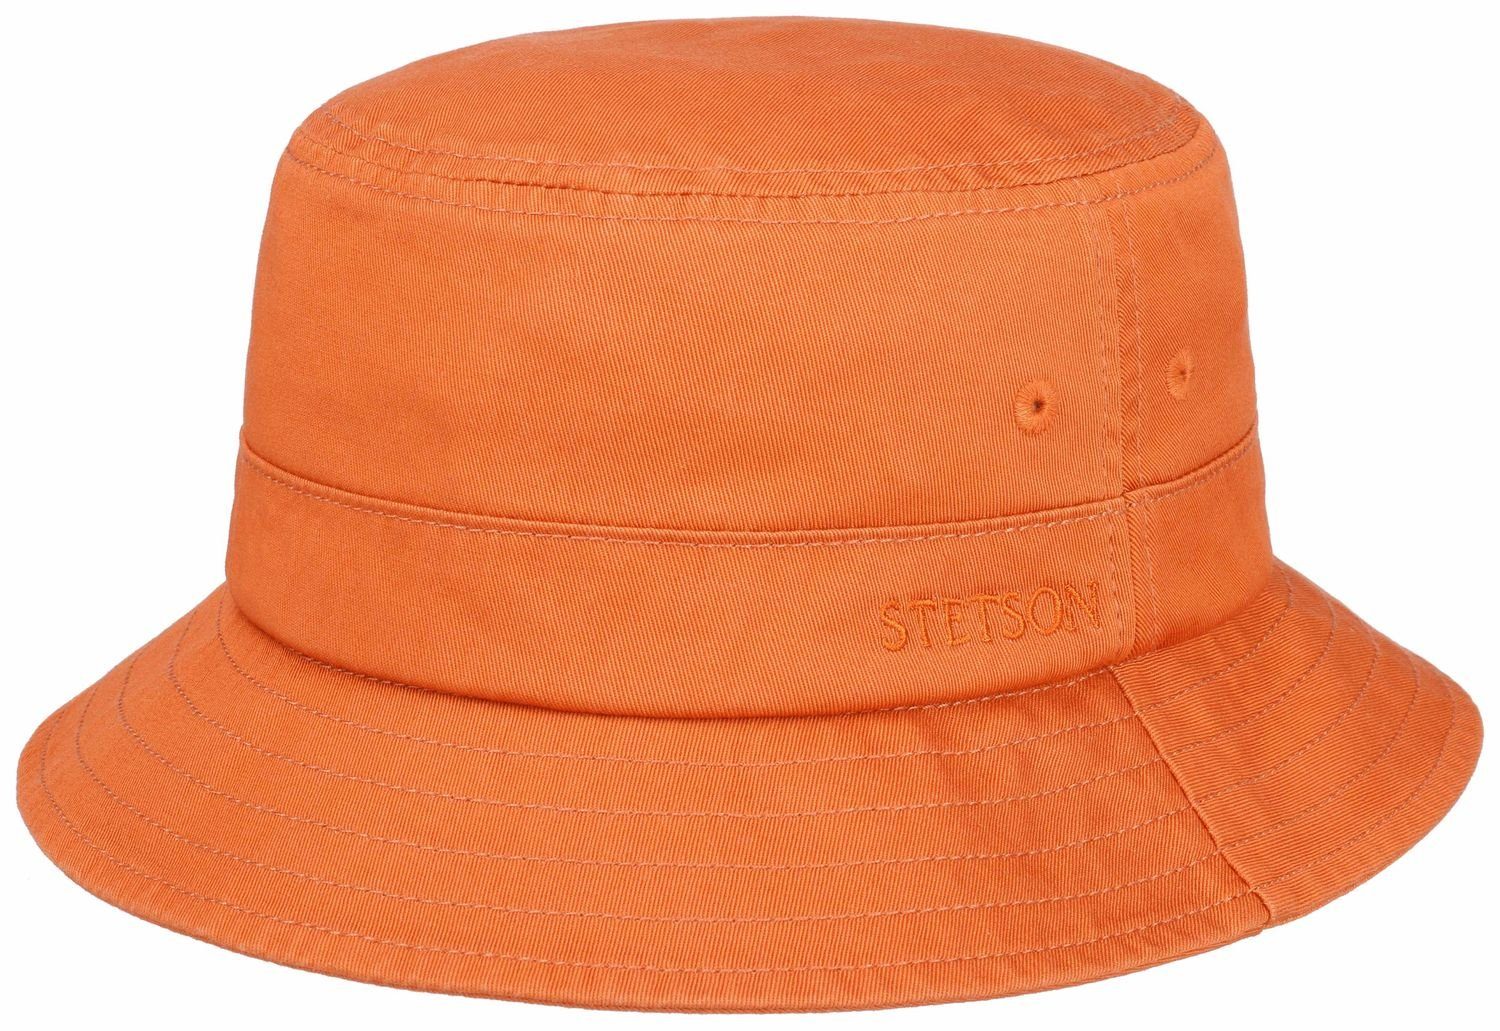 Baumwolle Stetson Filzhut Bucket-Hat rot/gelb 89 mit UV-Schutz40+/Atmungsaktiv